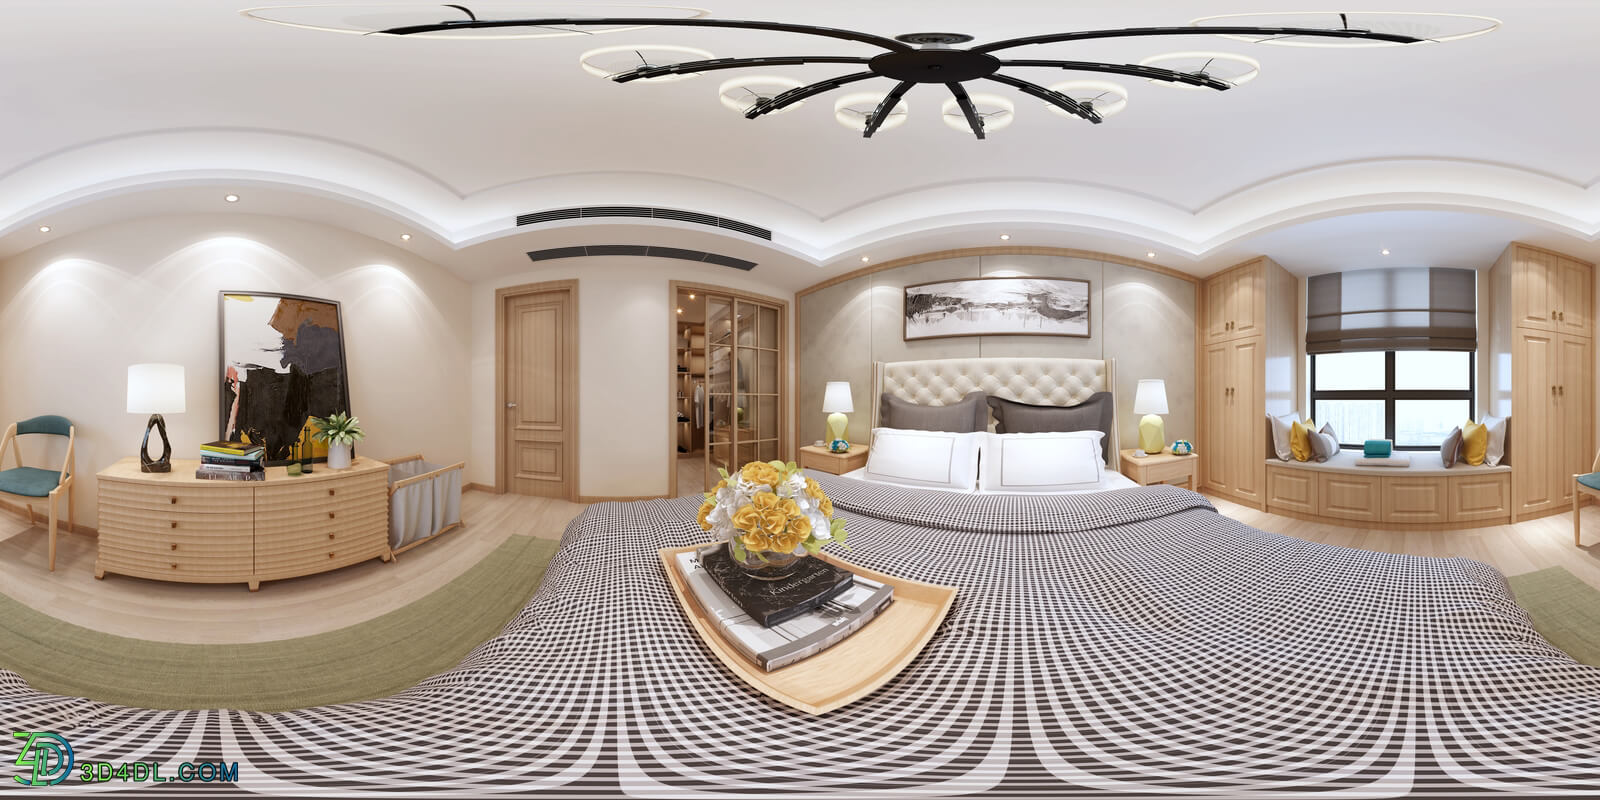 3D66 360° 2017 Bed Room Morden Styles Vol 1 C37